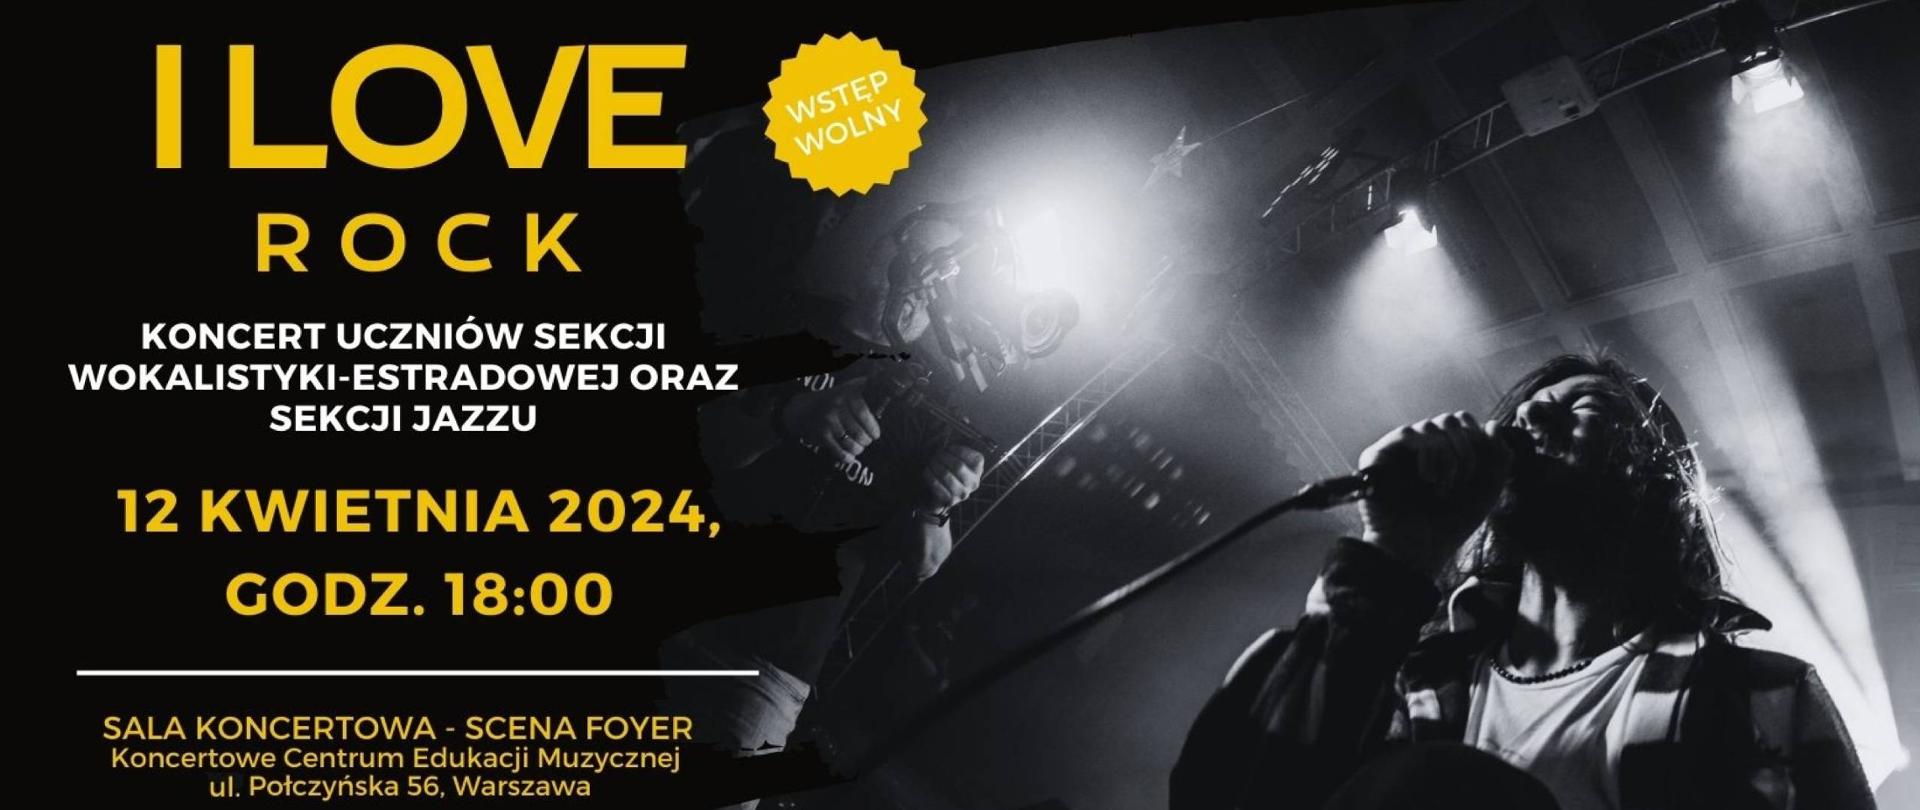 Baner - 12.04.2024 - koncert uczniów Sekcji Wokalistyki Estradowej oraz Sekcji Jazzu - "I love rock"